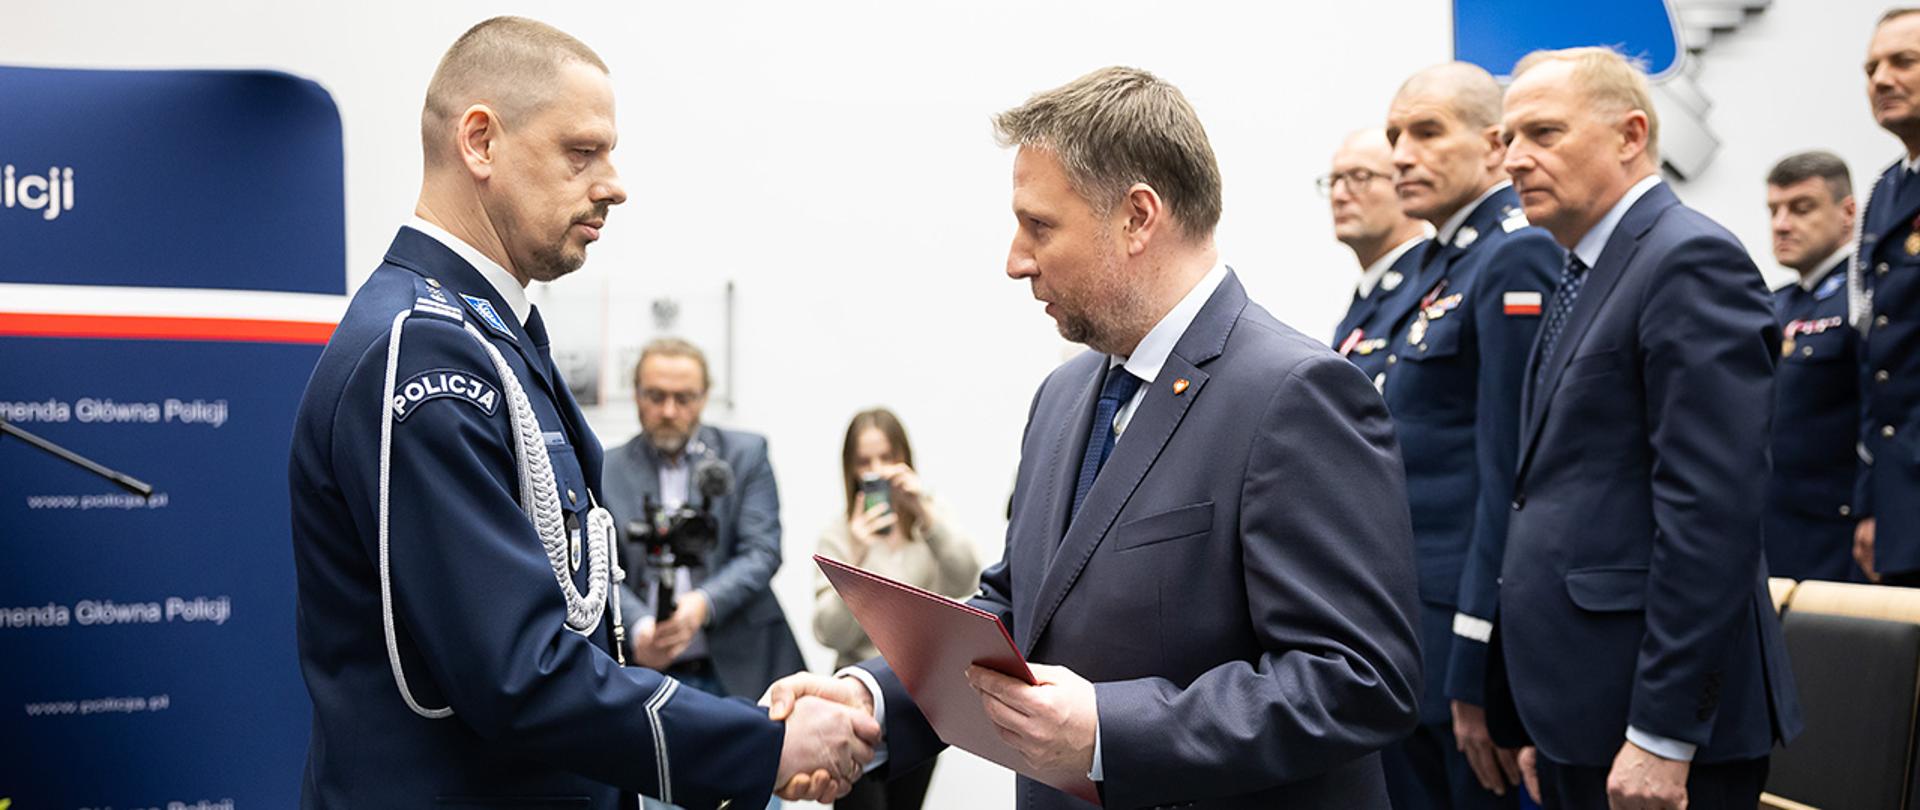 Inspektor Marek Boroń komendantem głównym Policji